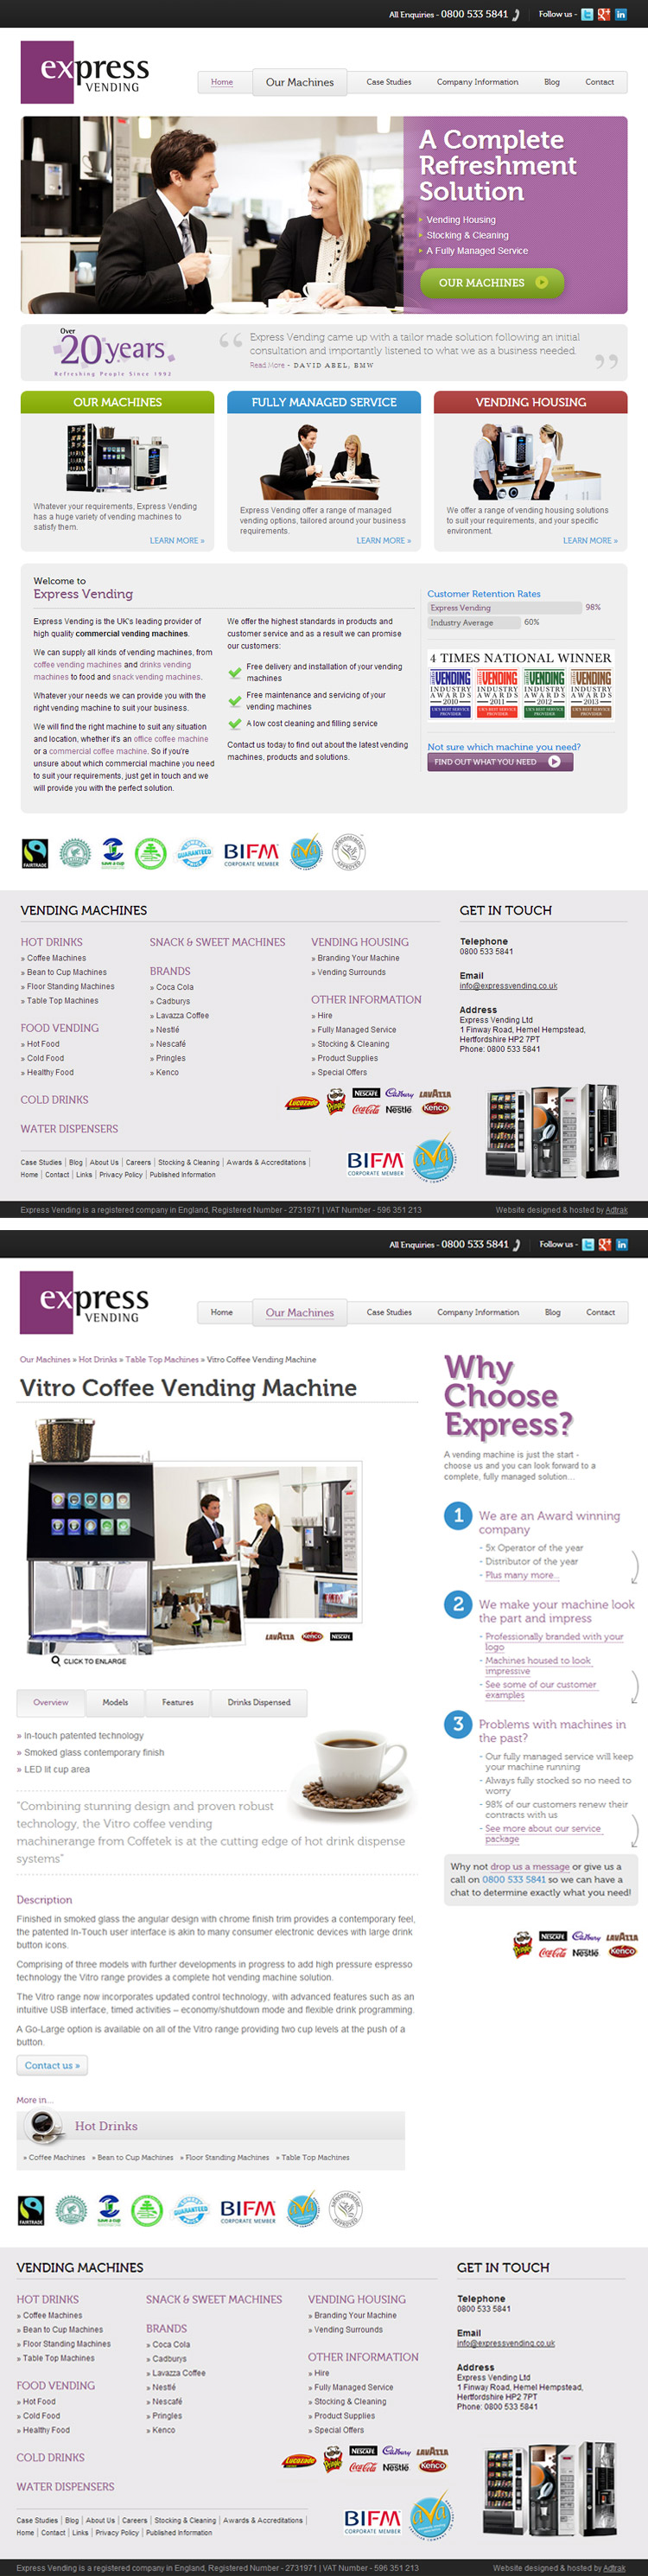 Express Vending Website